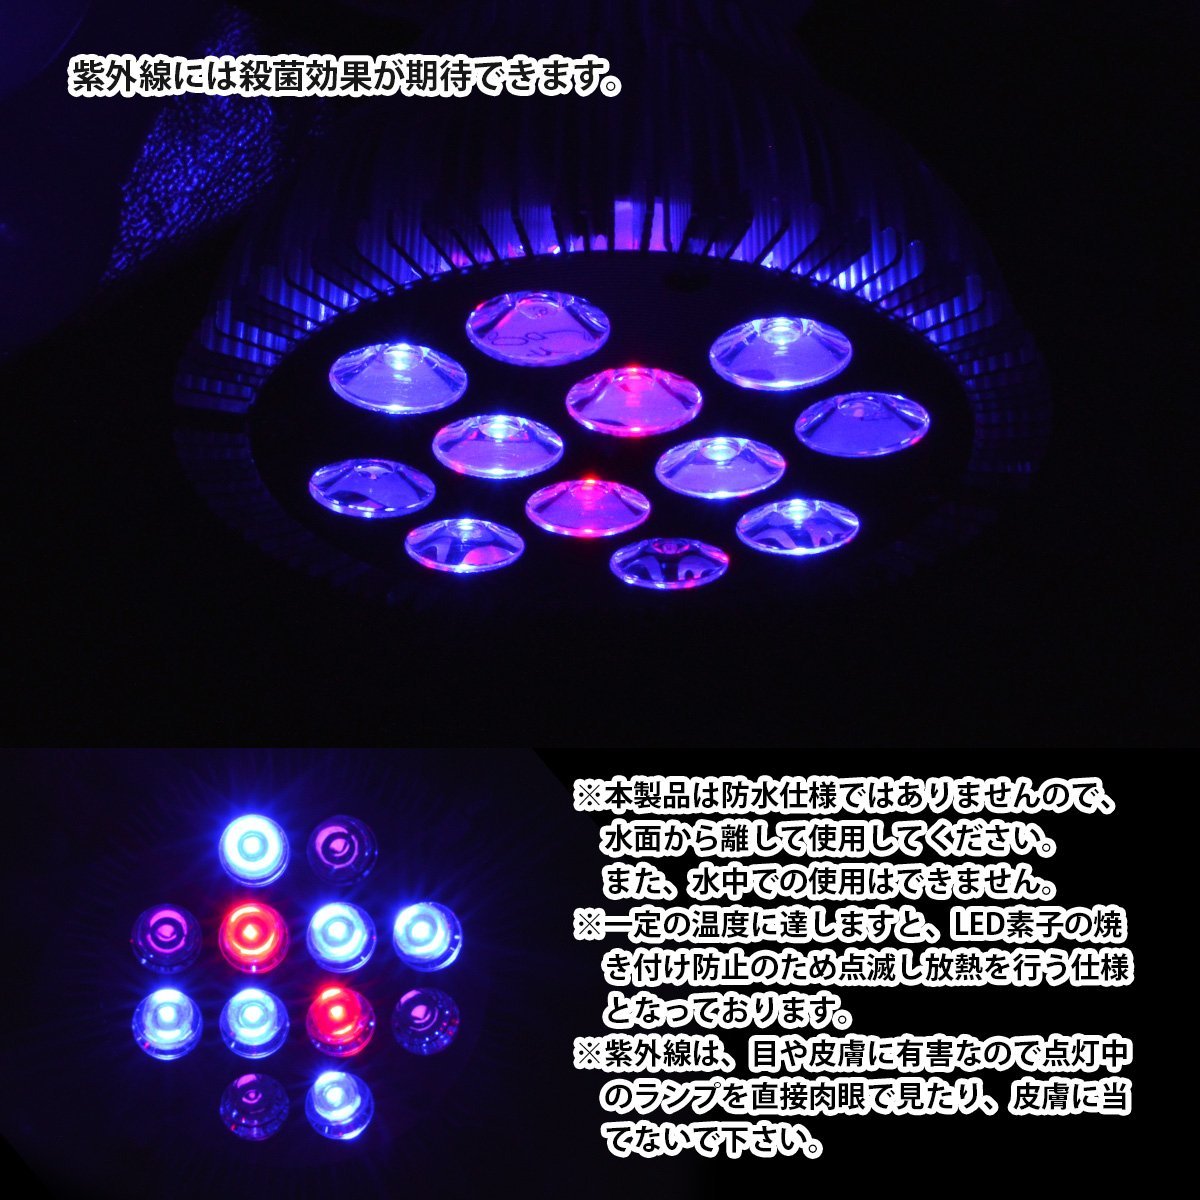 24W(2W×12) 12LED 青6/赤2/紫外線4 電球 E26 口金 水槽 用 照明 植物育成 スポット ライト 12LED アクアリウム 電気 水草_画像4